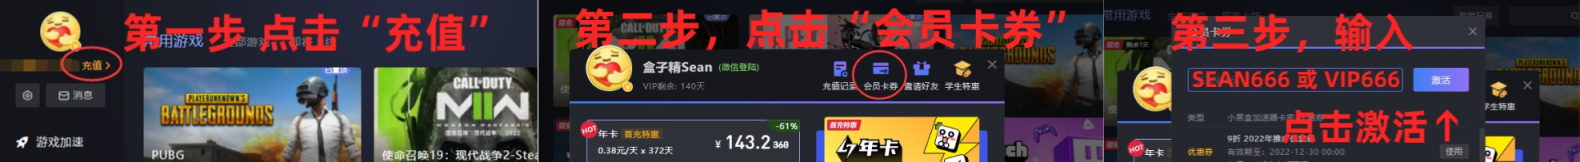 盒友资讯：TGA 2022：”玩家之声”首轮投票结果-法环战神暂时平票 1%title%